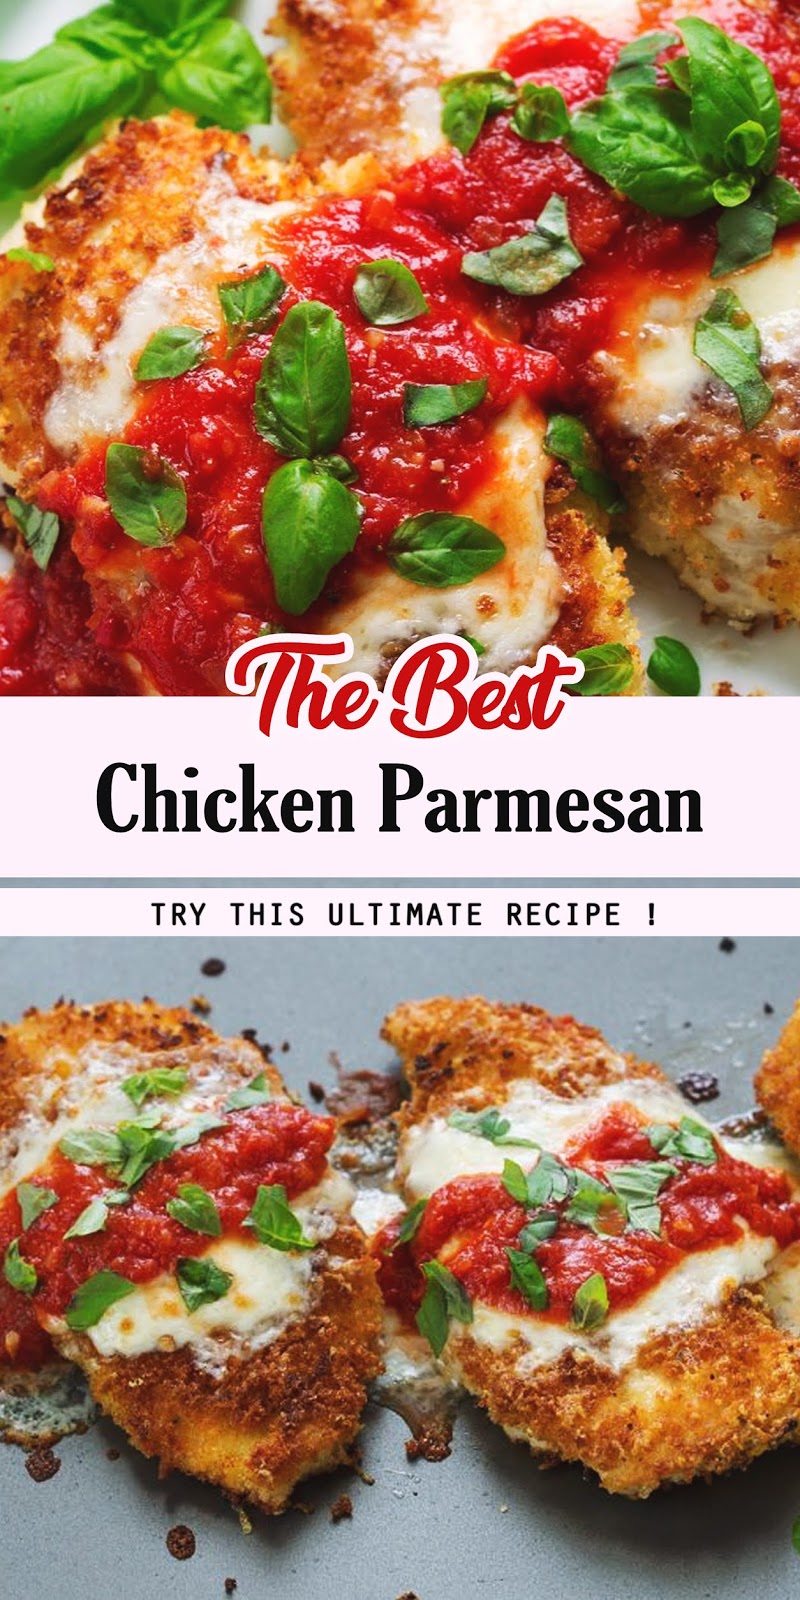 The Best Chicken Parmesan - SENIN WAWAN 2